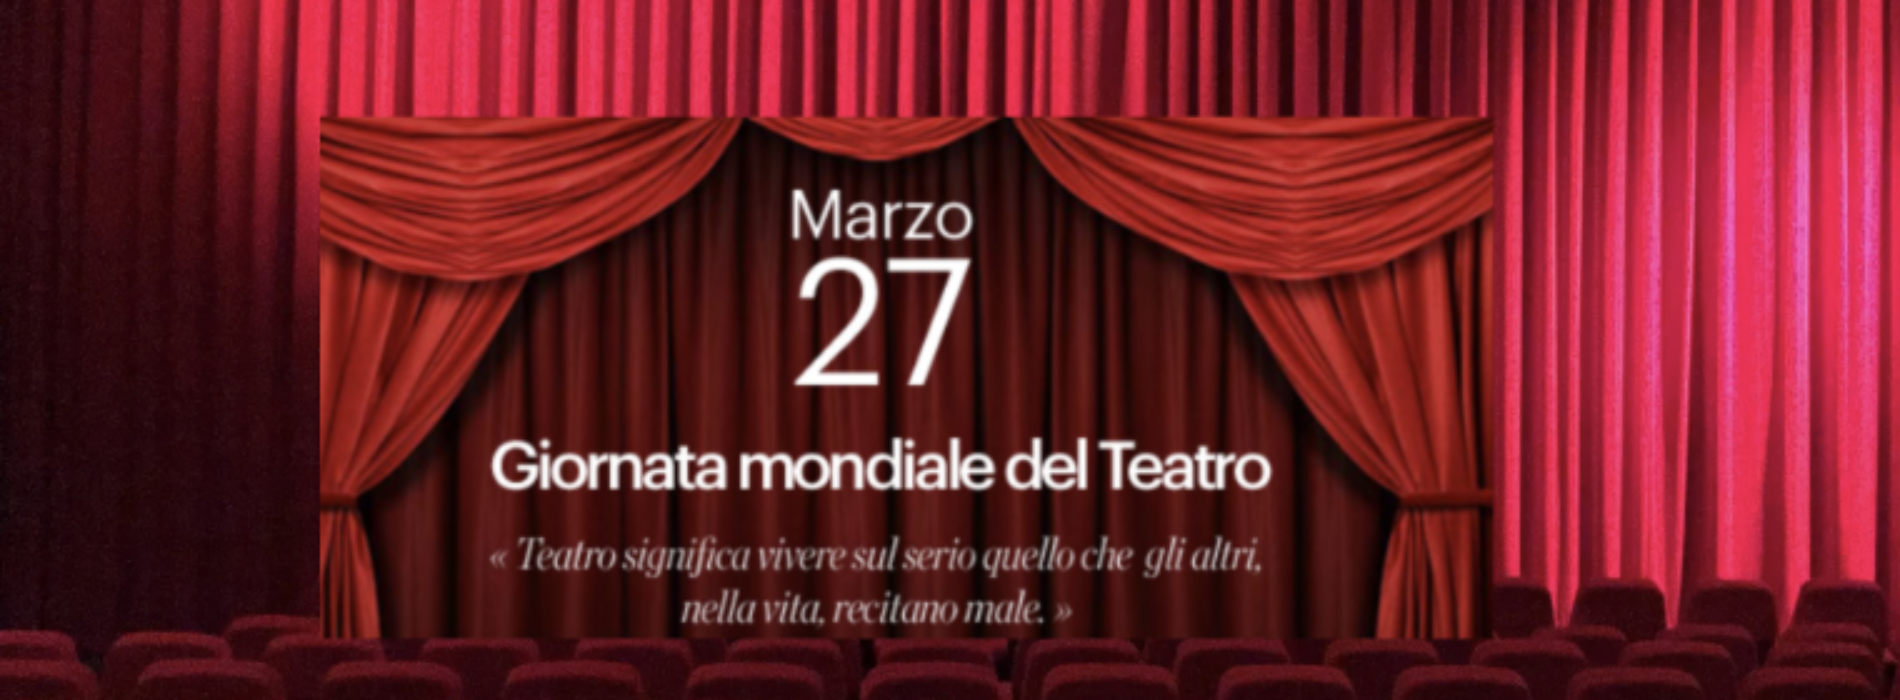 27 marzo. Una buona Giornata mondiale del Teatro a tutti!